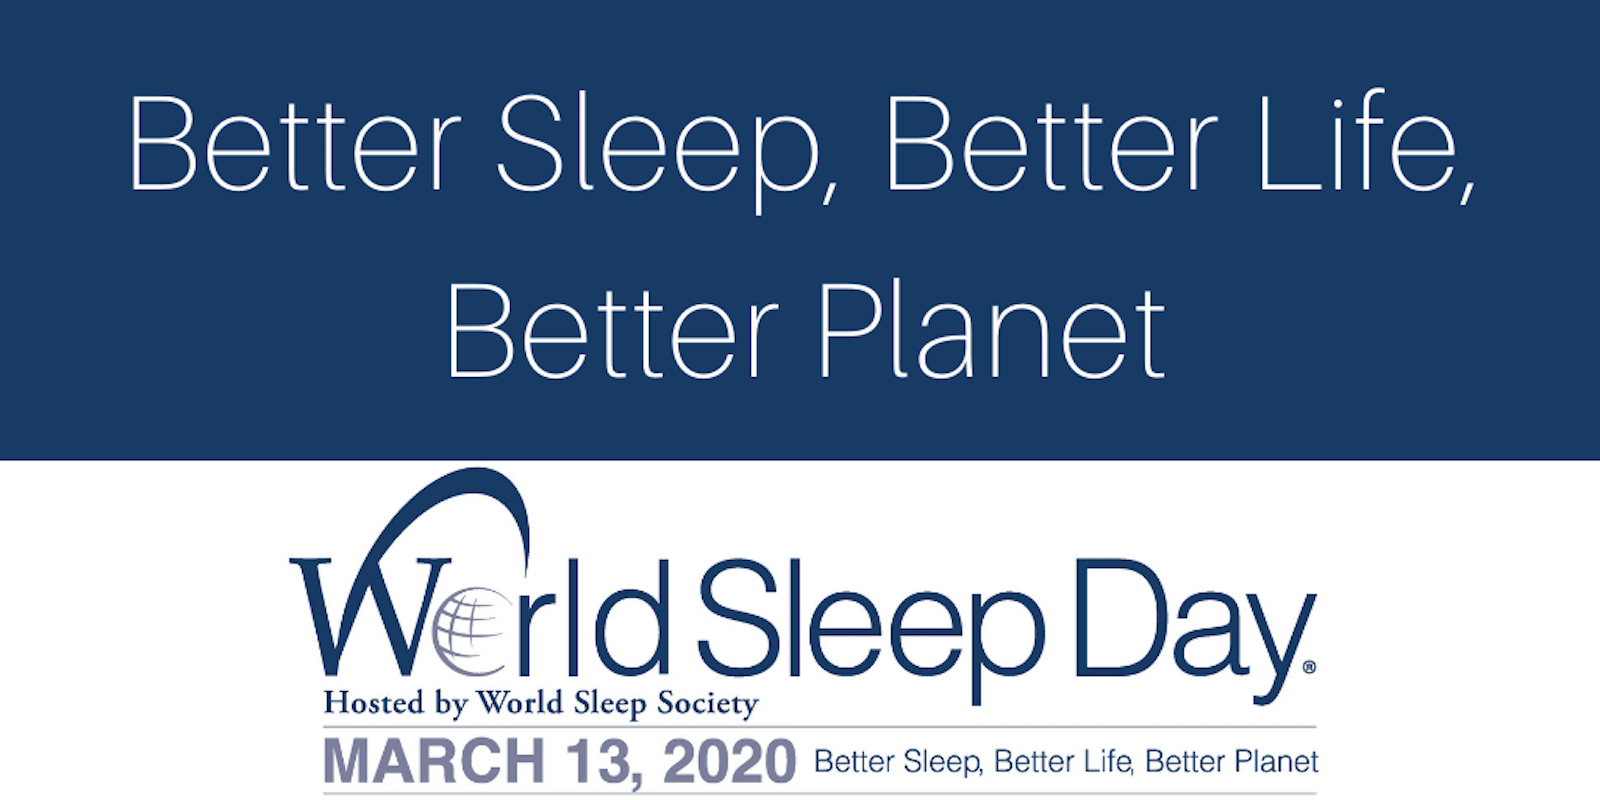 Foto Día Mundial del Sueño: Un recordatorio sobre la importancia de dormir bien 5 marzo 2020